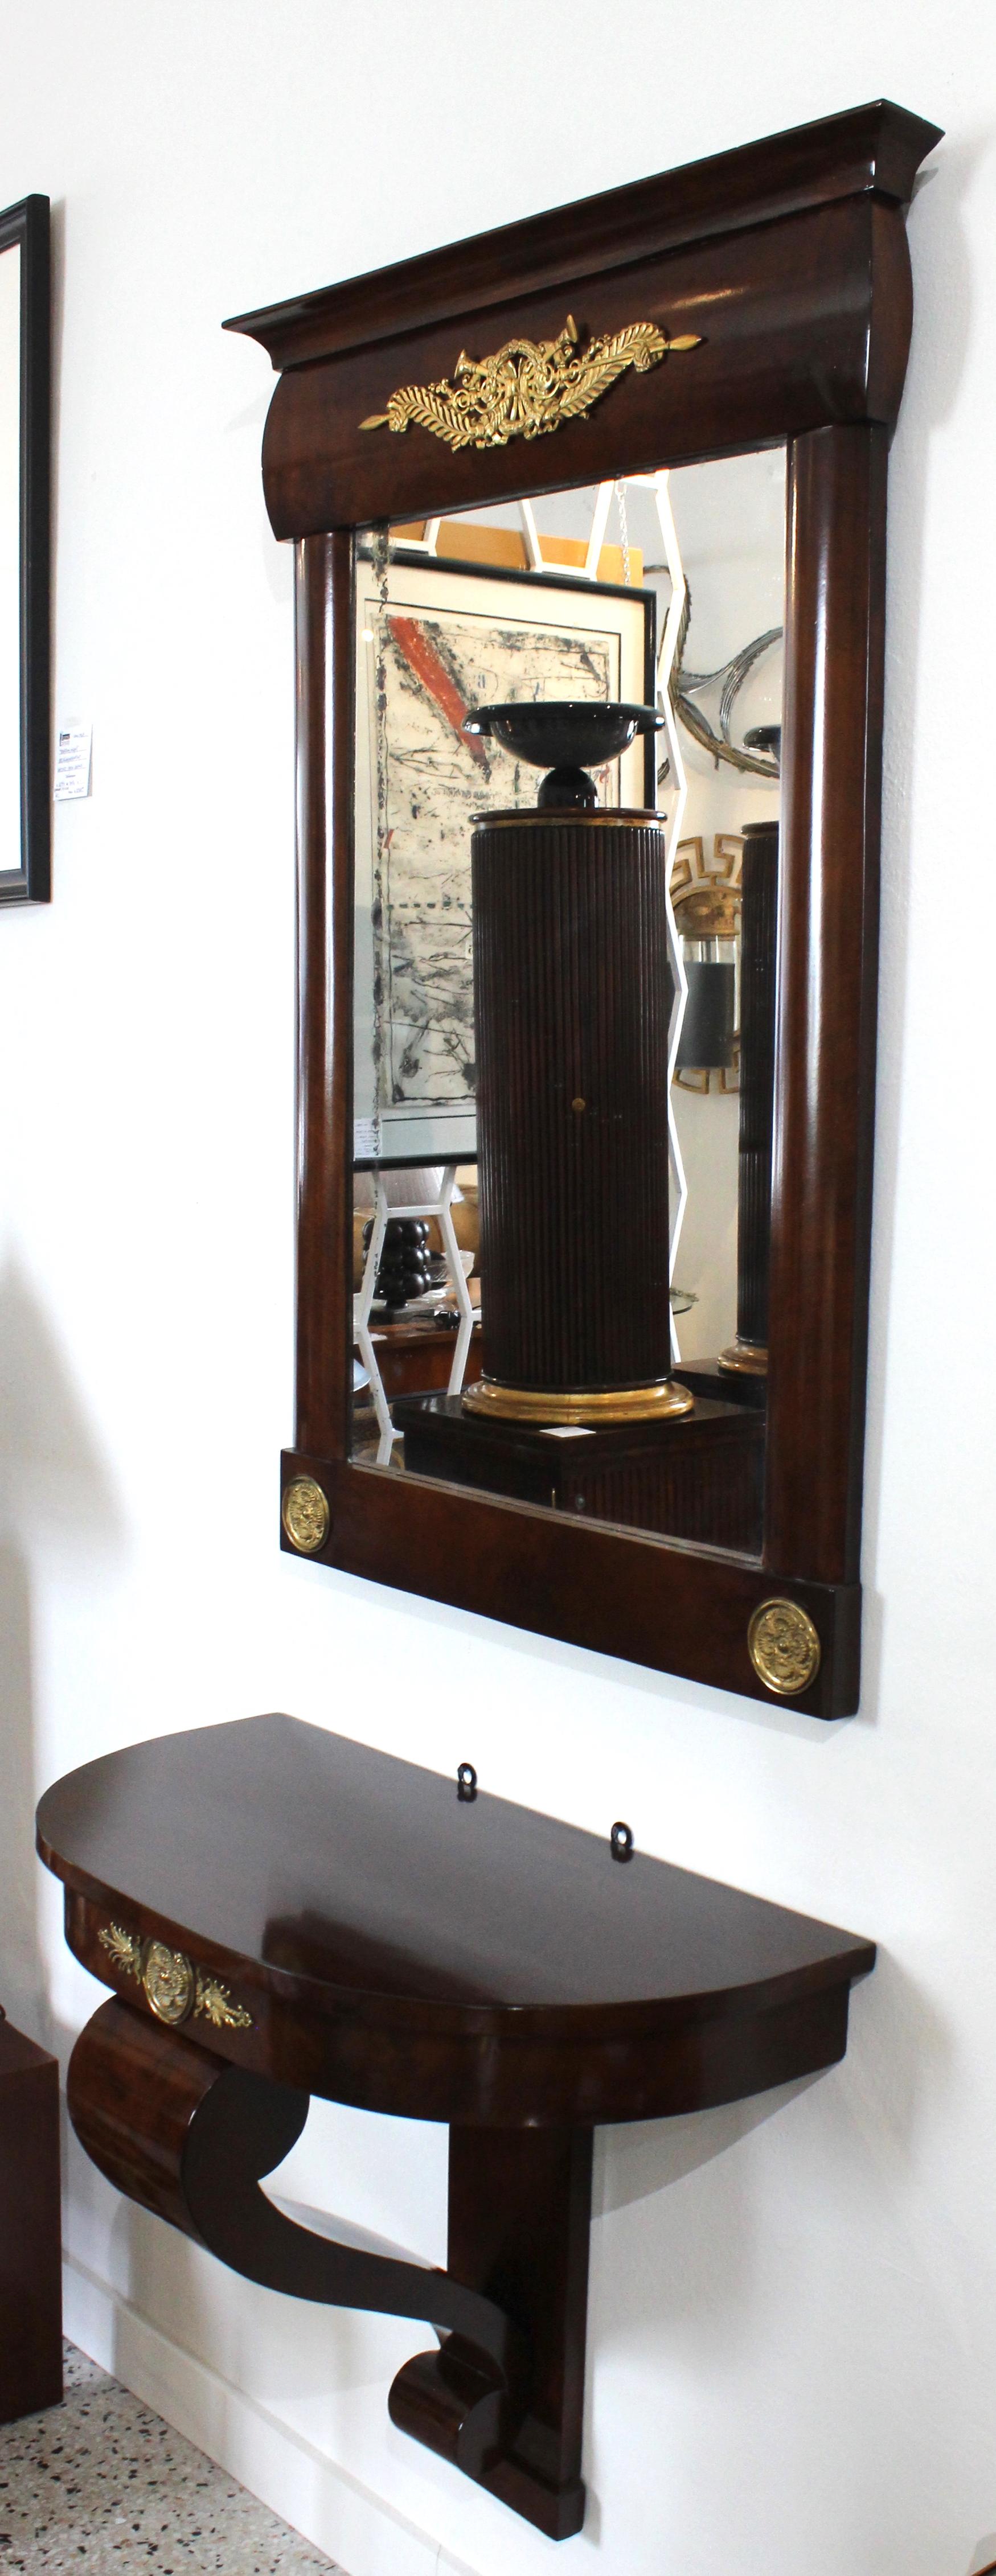 Diese stilvolle wandhängende Konsole im Empire-Stil und der Spiegel stammen aus dem 19. Jahrhundert und wurden in Österreich erworben. Das Stück ist aus Mahagoni gefertigt und mit Bronzedoré-Beschlägen versehen.

Hinweis: Das Stück behält seinen